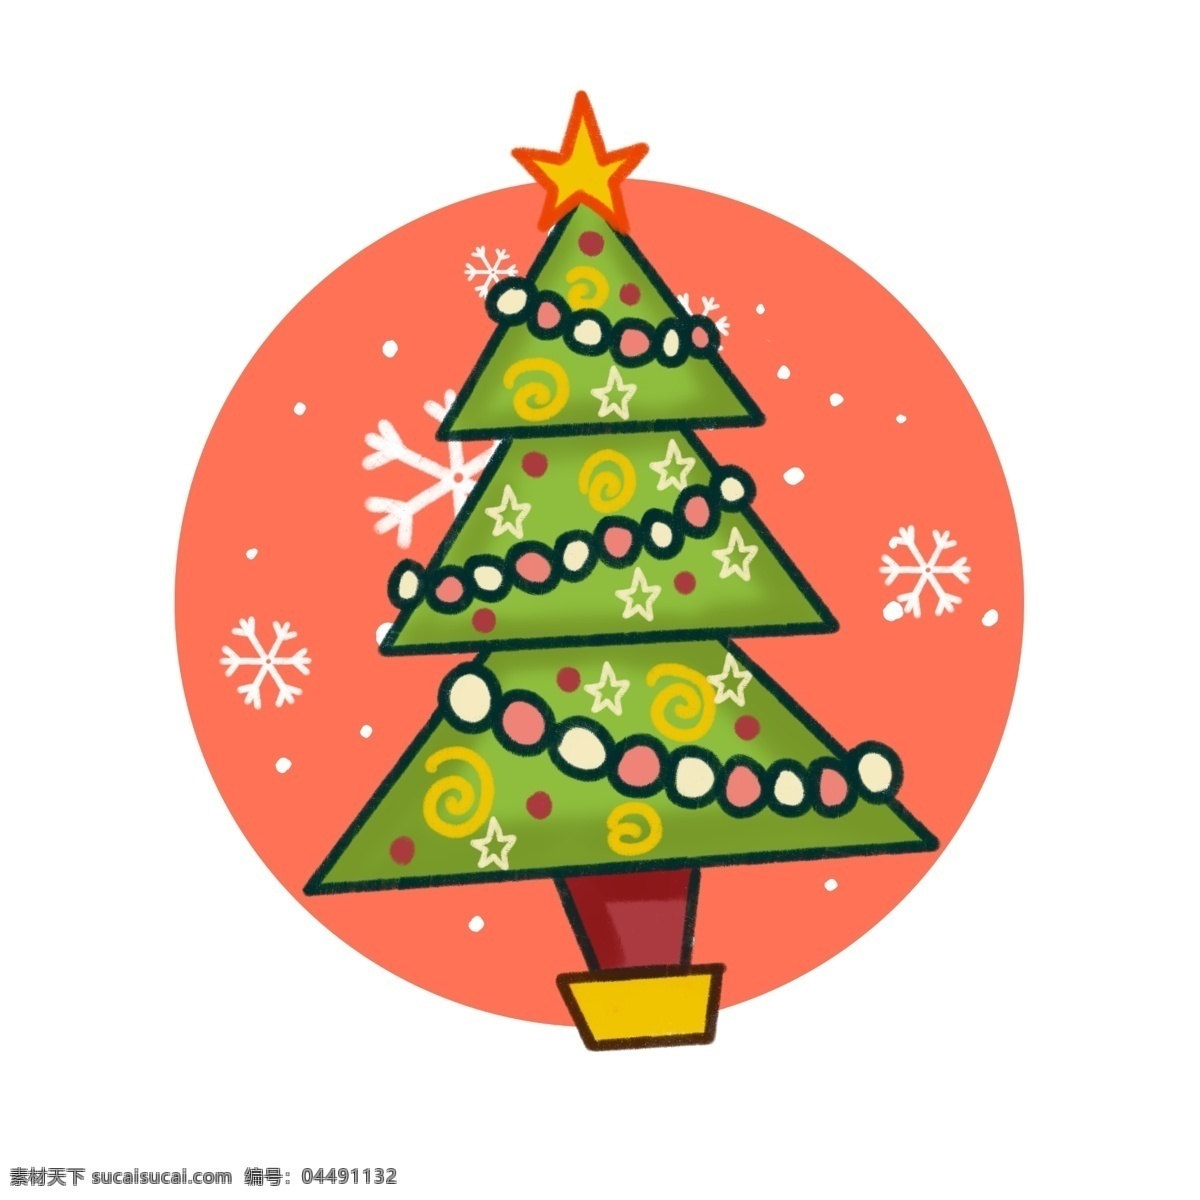 原创 手绘 风 插画 圣诞 节日 圣诞树 元素 圣诞节 喜庆 雪花 手绘风 板绘 灯球 彩灯 雪球